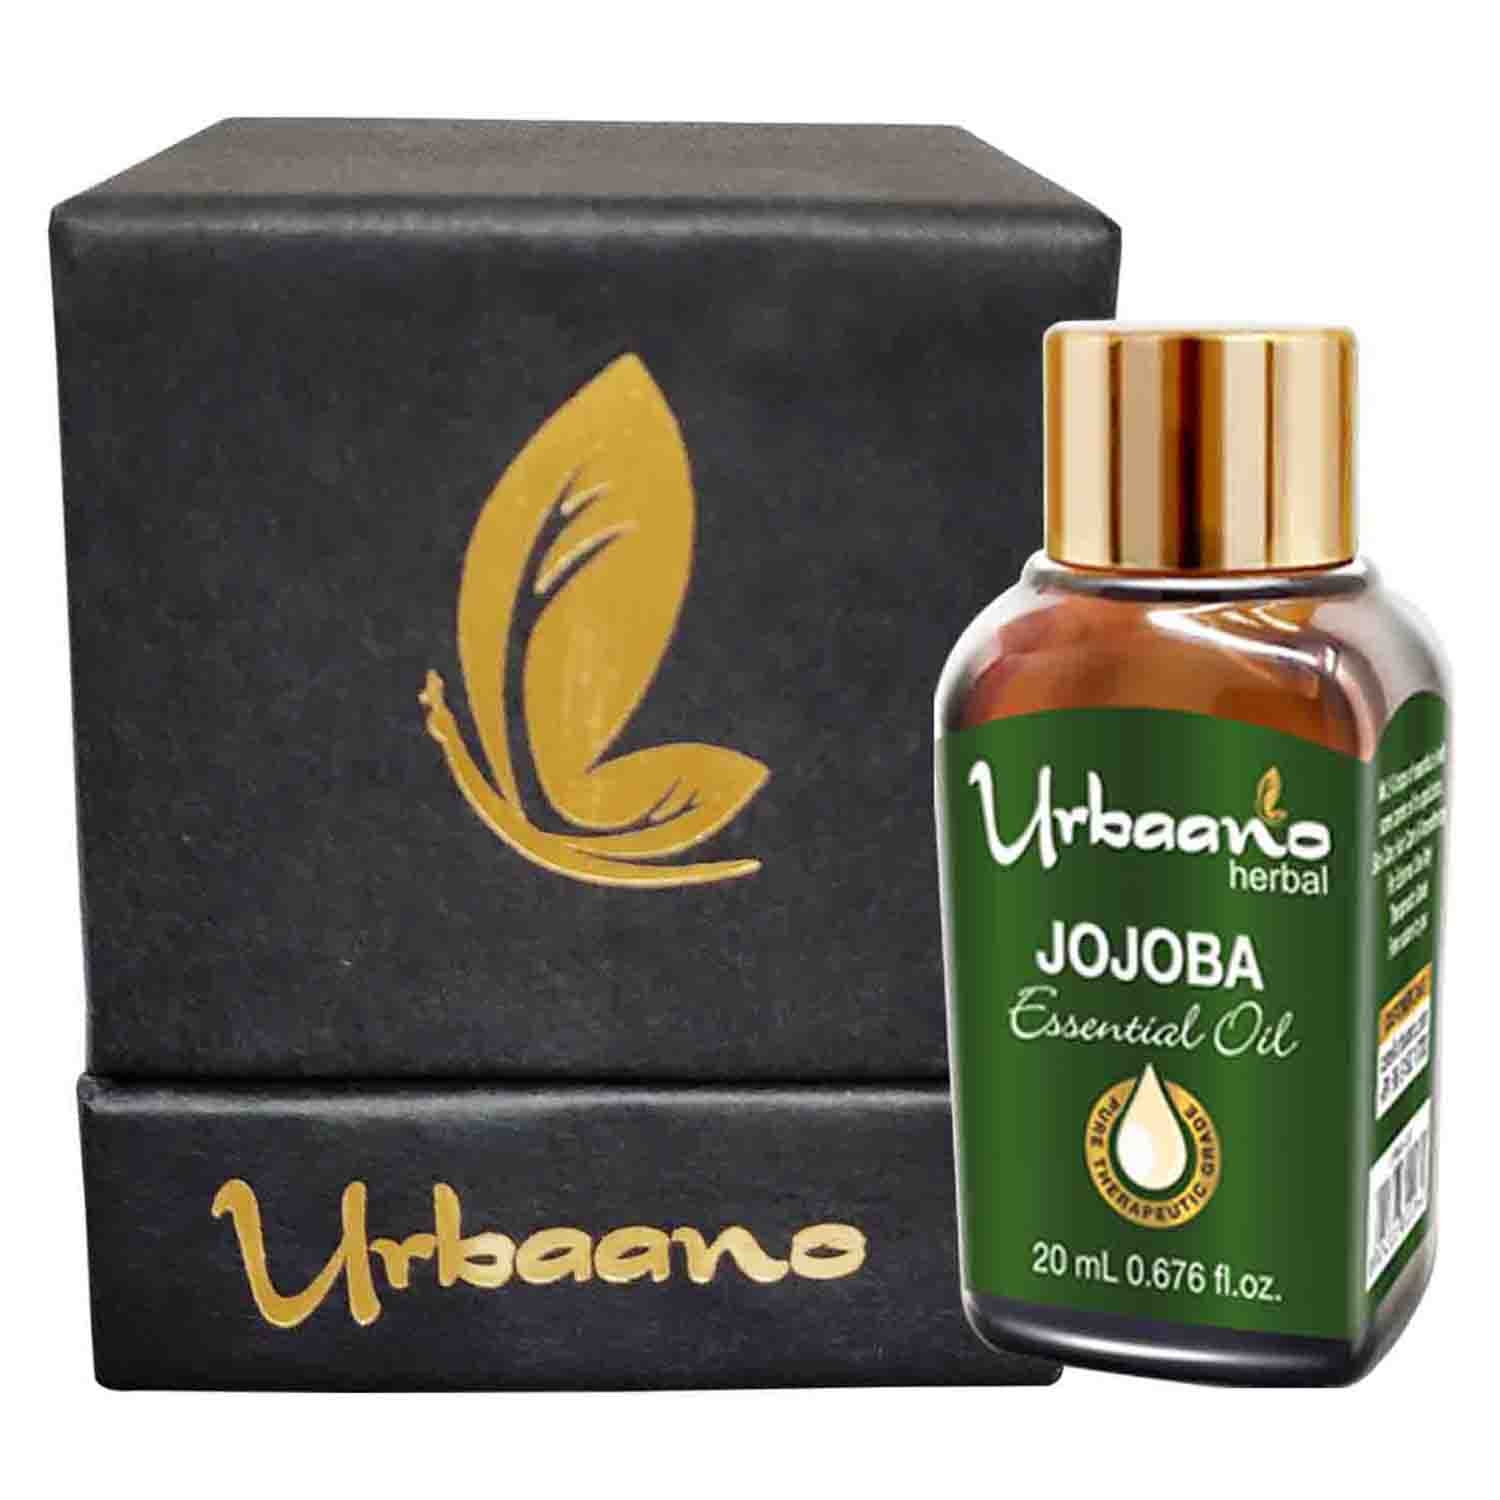 Urbaano Herbal | Urbaano Herbal Jojoba Essential Oil for Skin & Hair Care-20ml